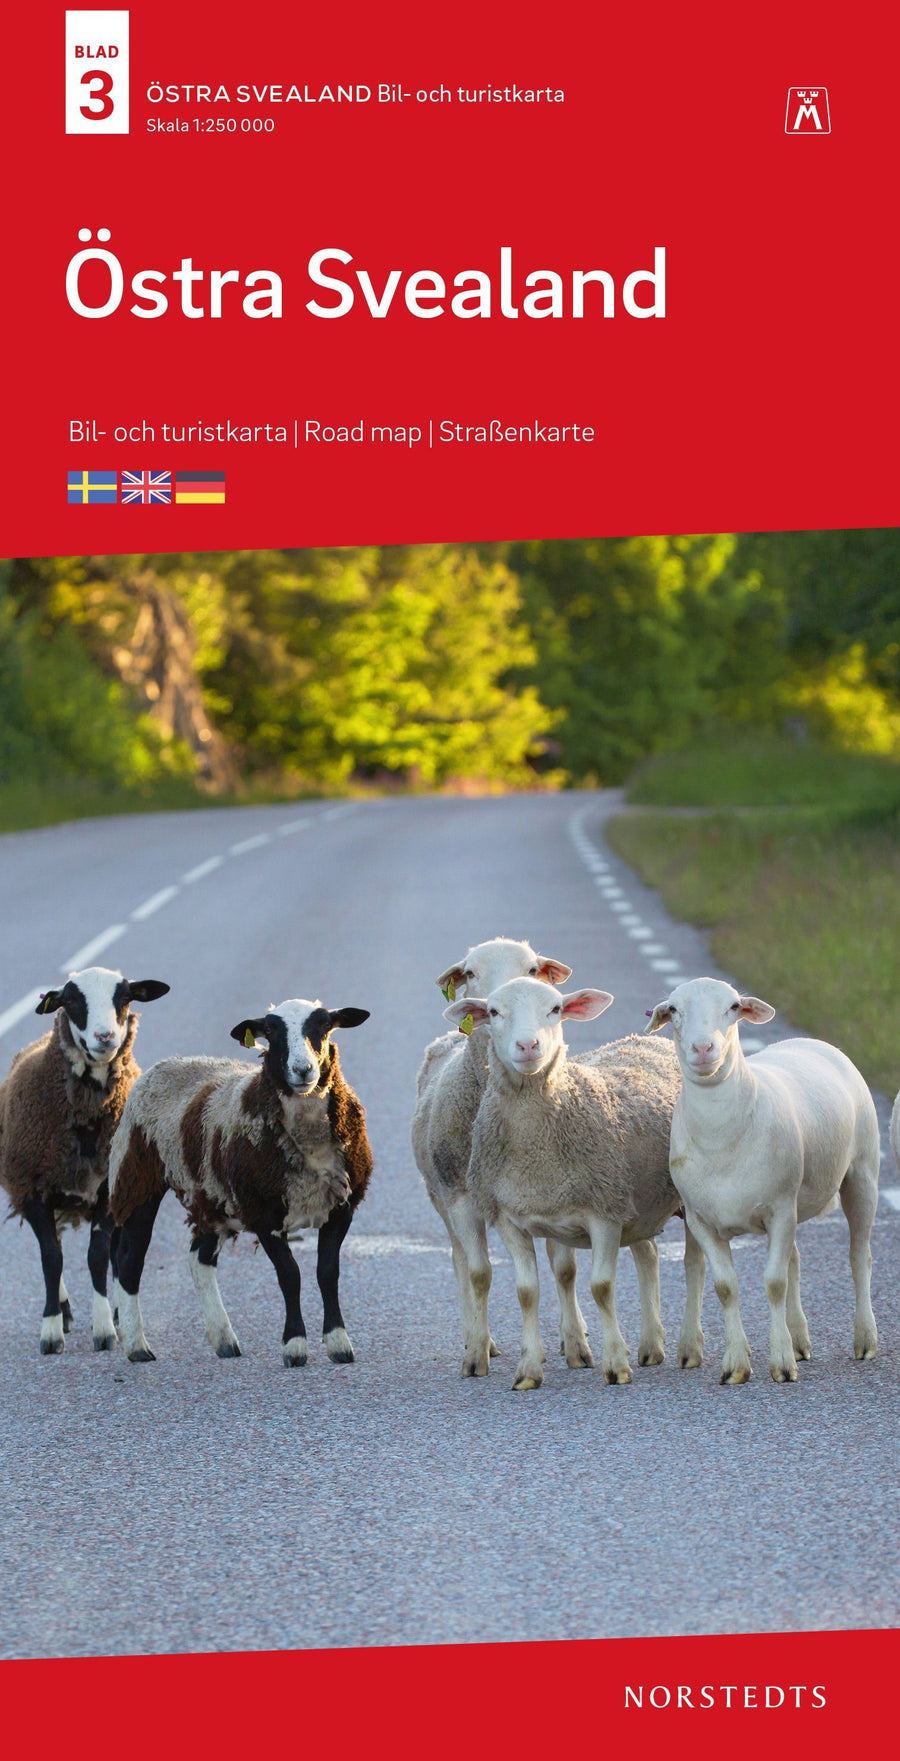 Carte routière n° 3 - Sud-est de la Suède | Norstedts carte pliée Norstedts 